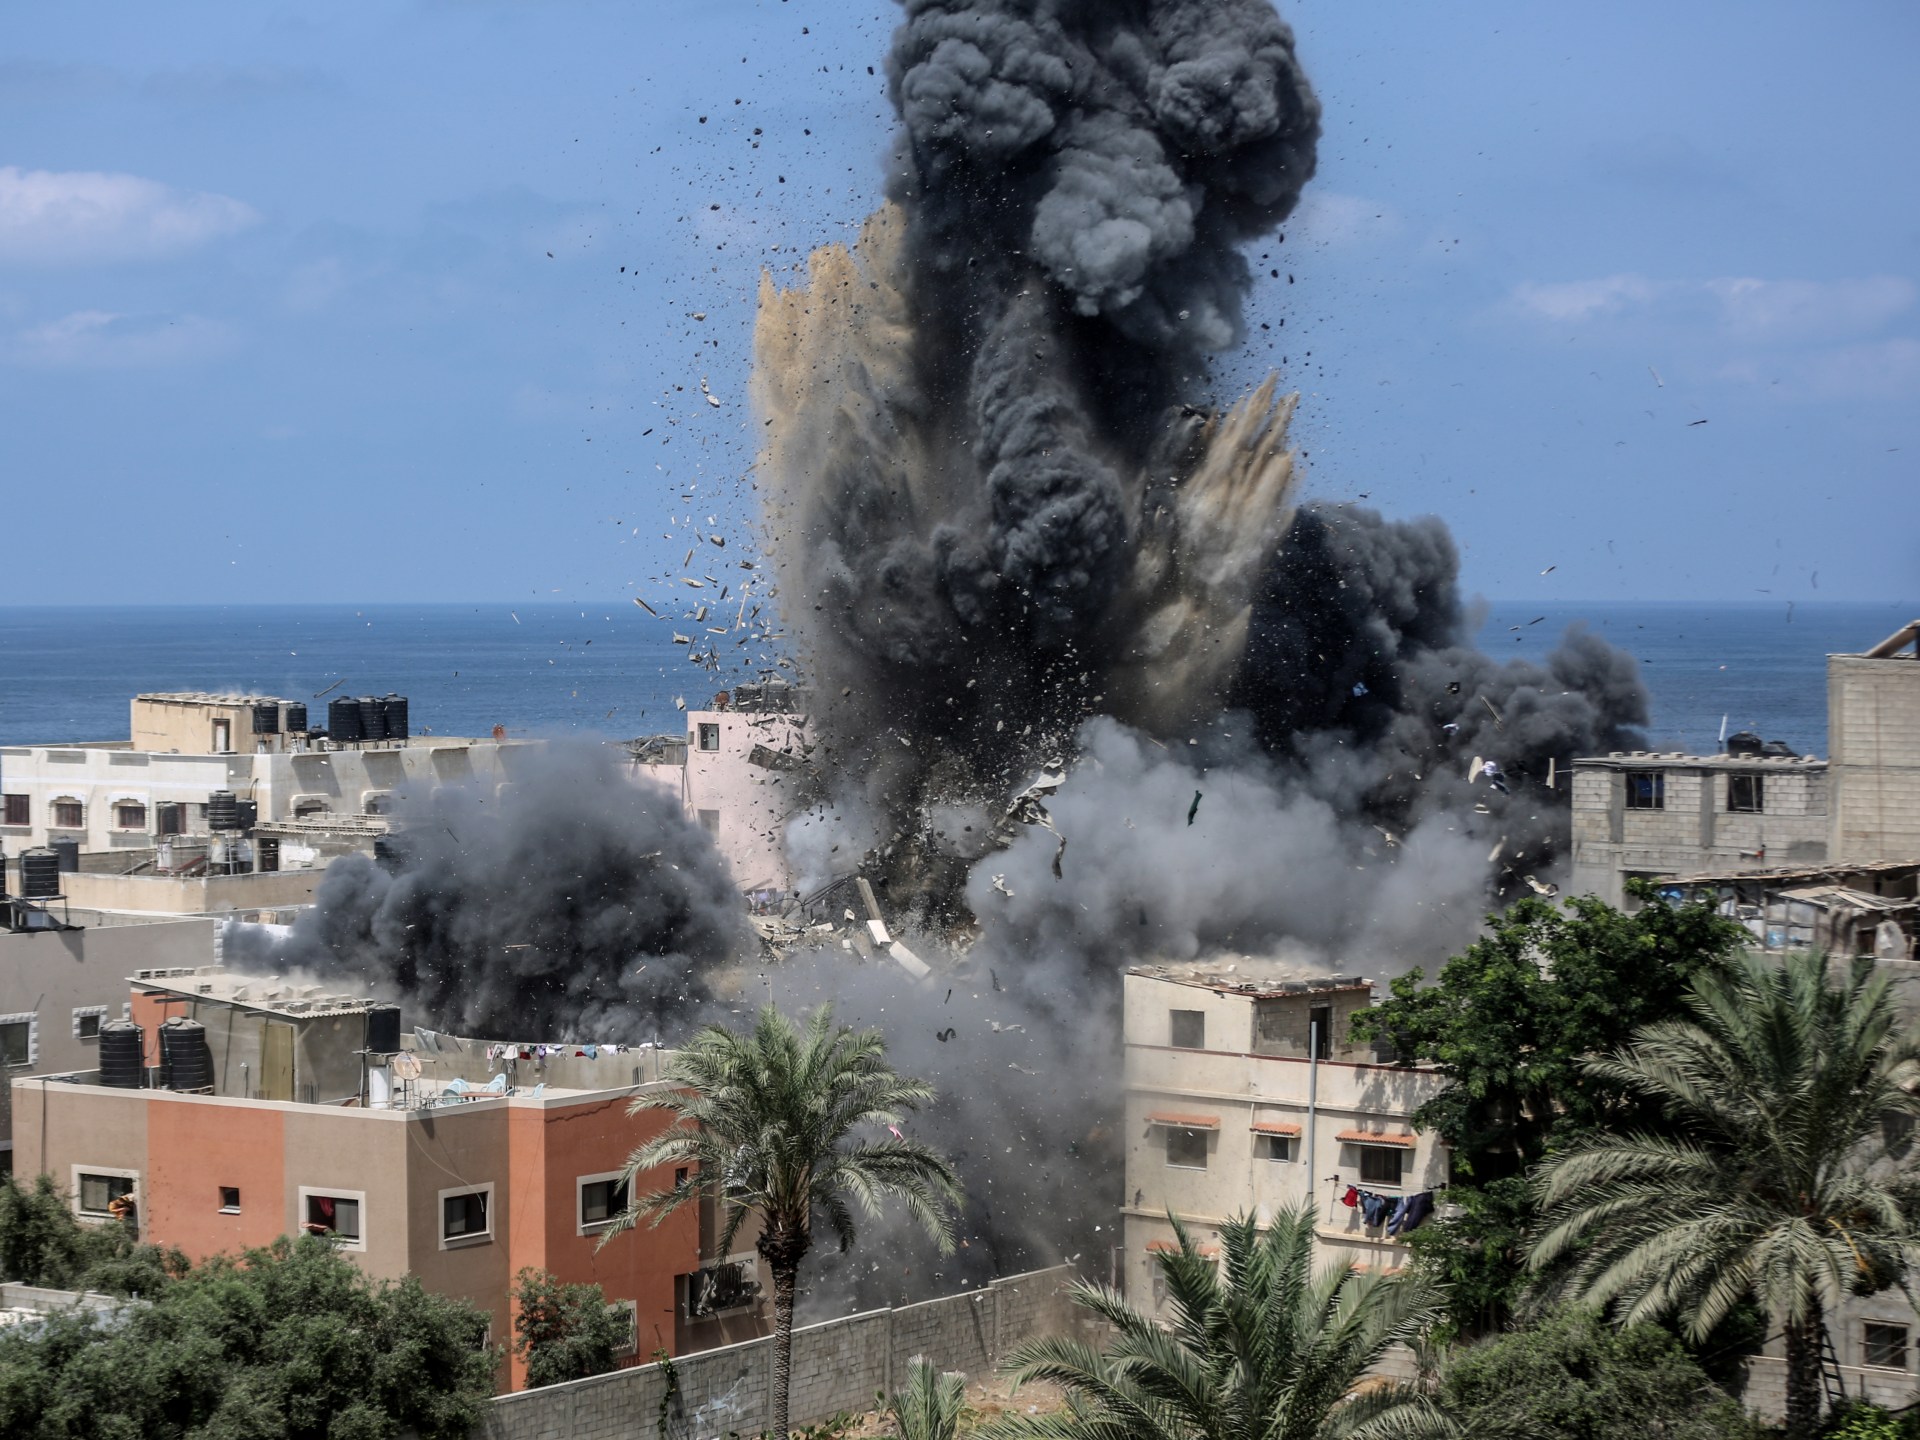 تباين كبير ورغبات متنافرة.. من يحكم غزة في اليوم التالي للحرب؟ | سياسة – البوكس نيوز